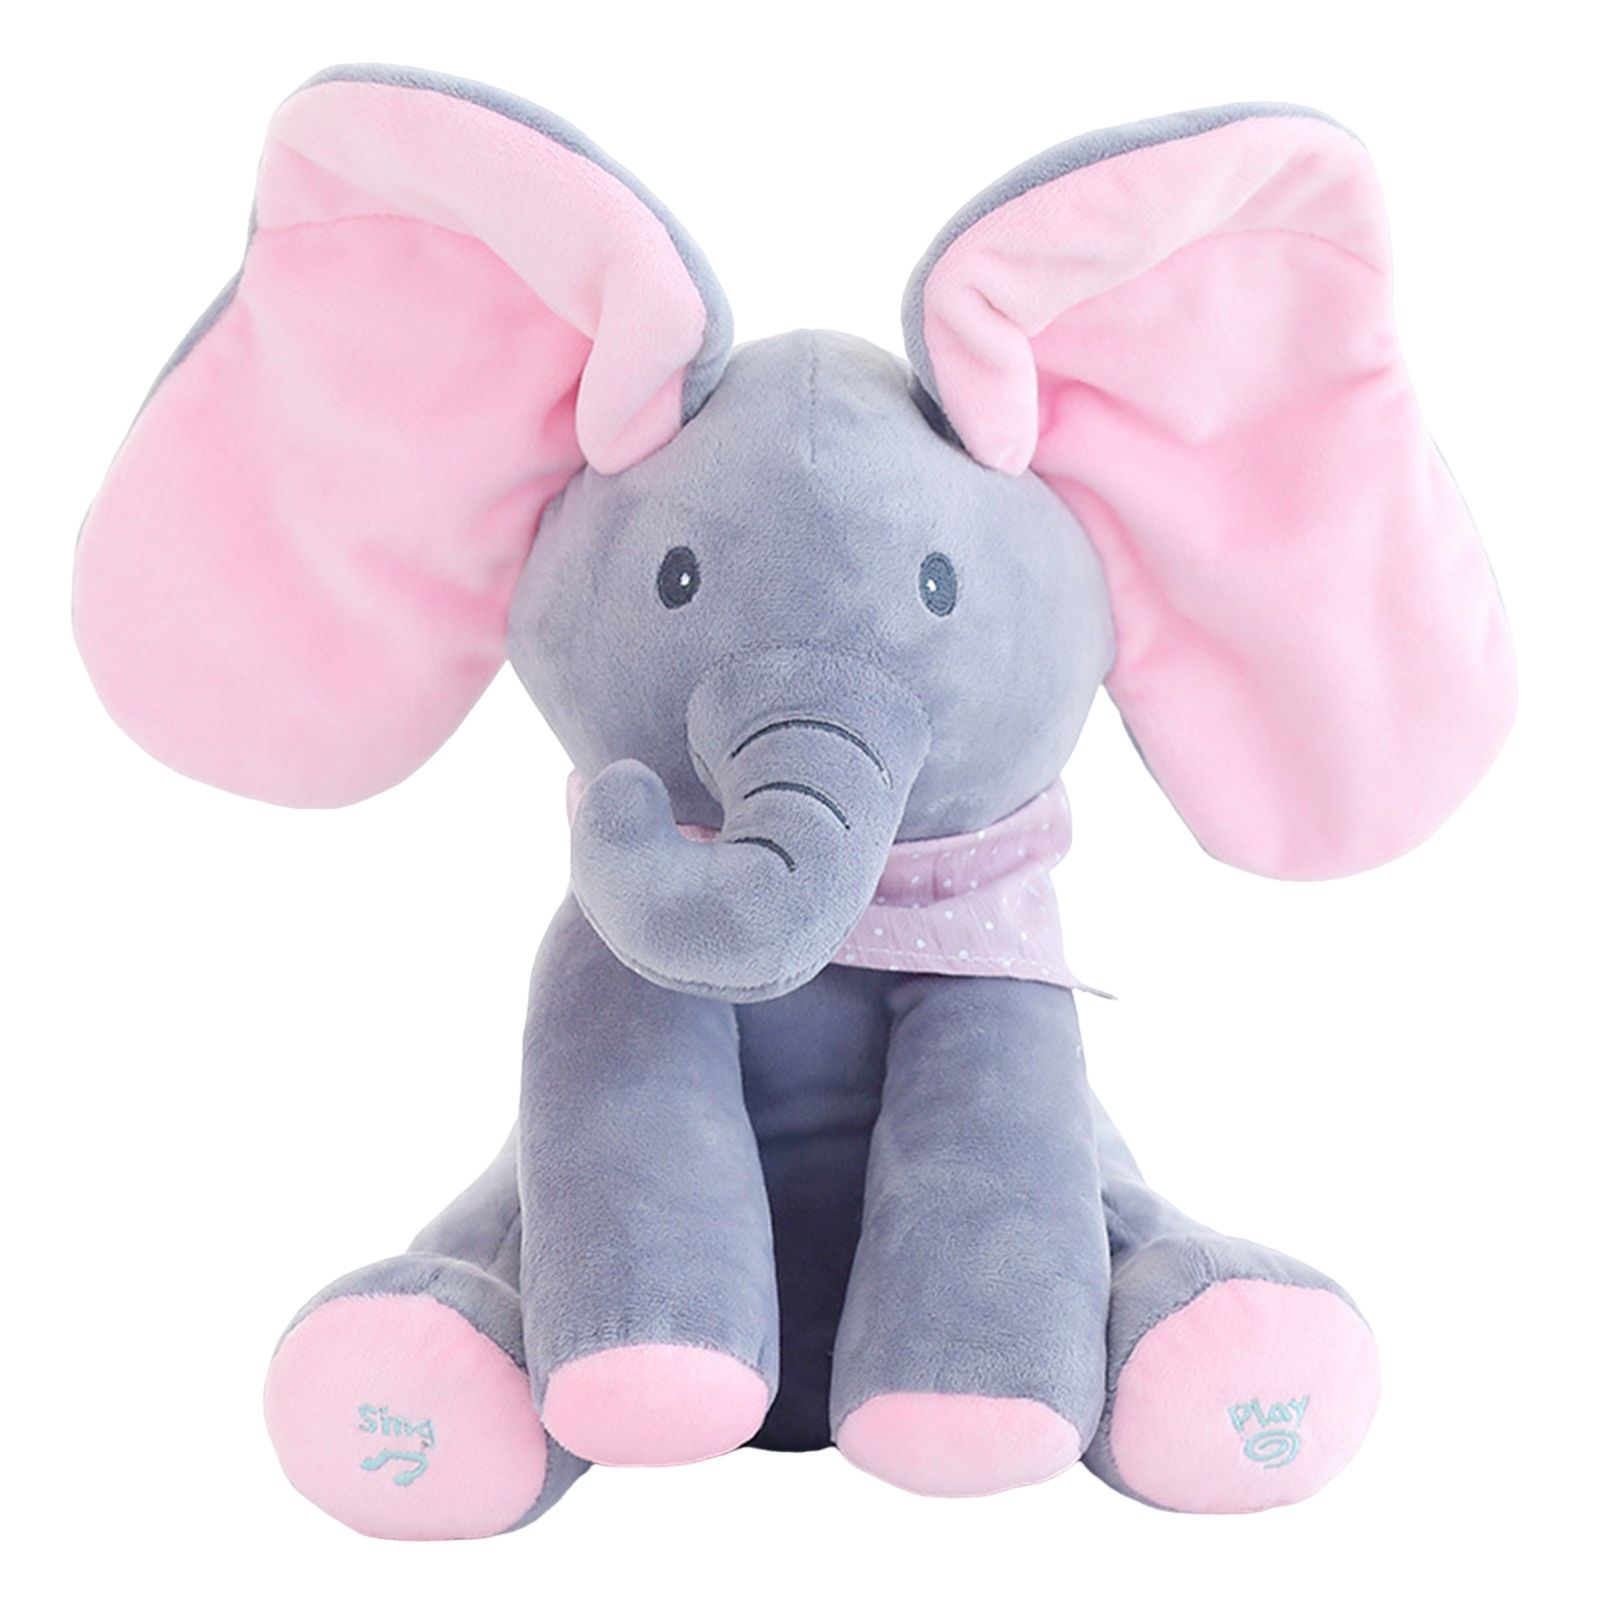 Слоник цена. Слоненок Элефант игрушка. Интерактивная игрушка слон Дамбо. Интерактивная игрушка слон Лолли,. Слон плюшевый мягкая игрушка.